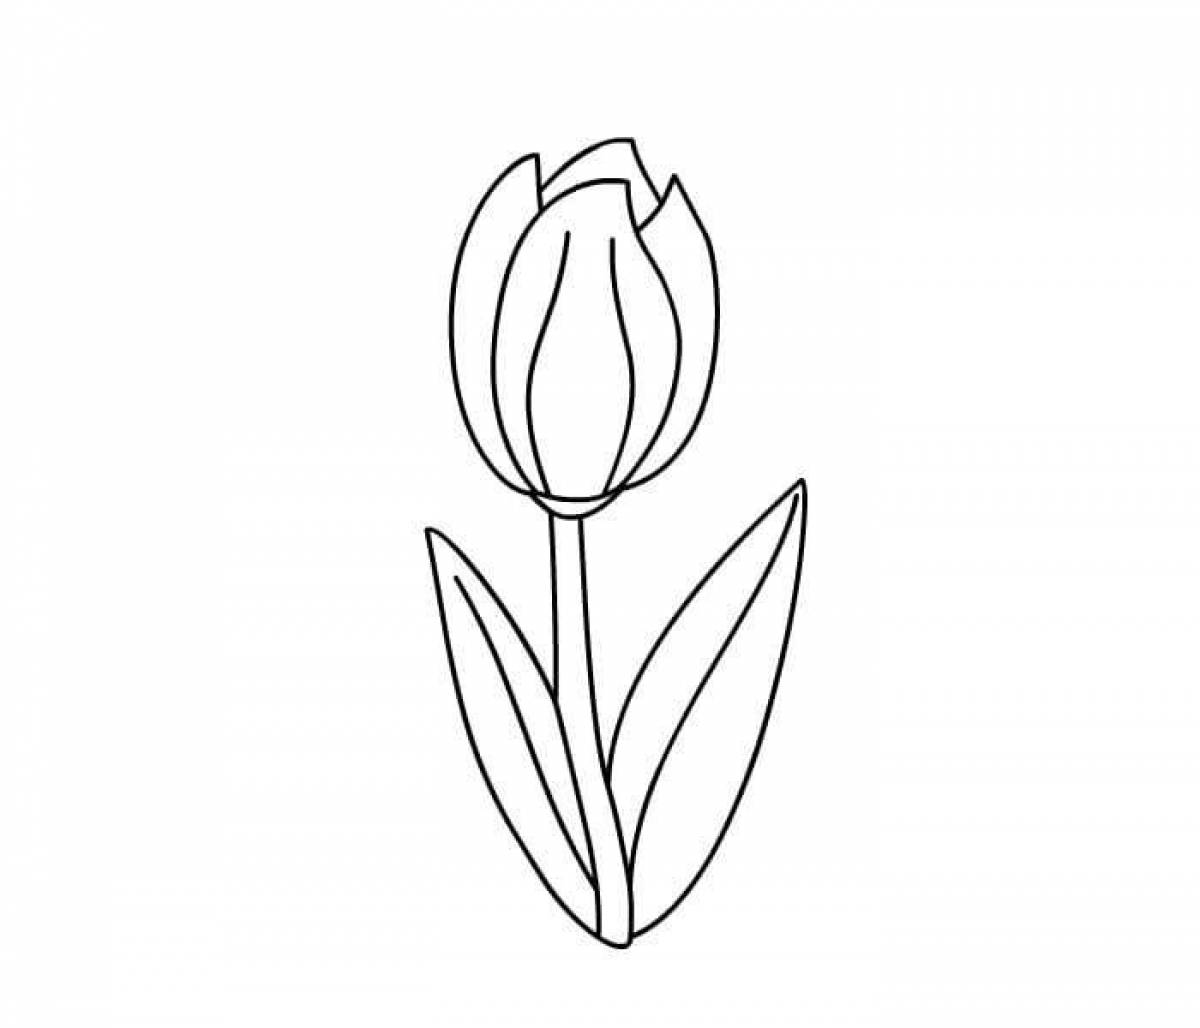 Magic tulip coloring book for kids